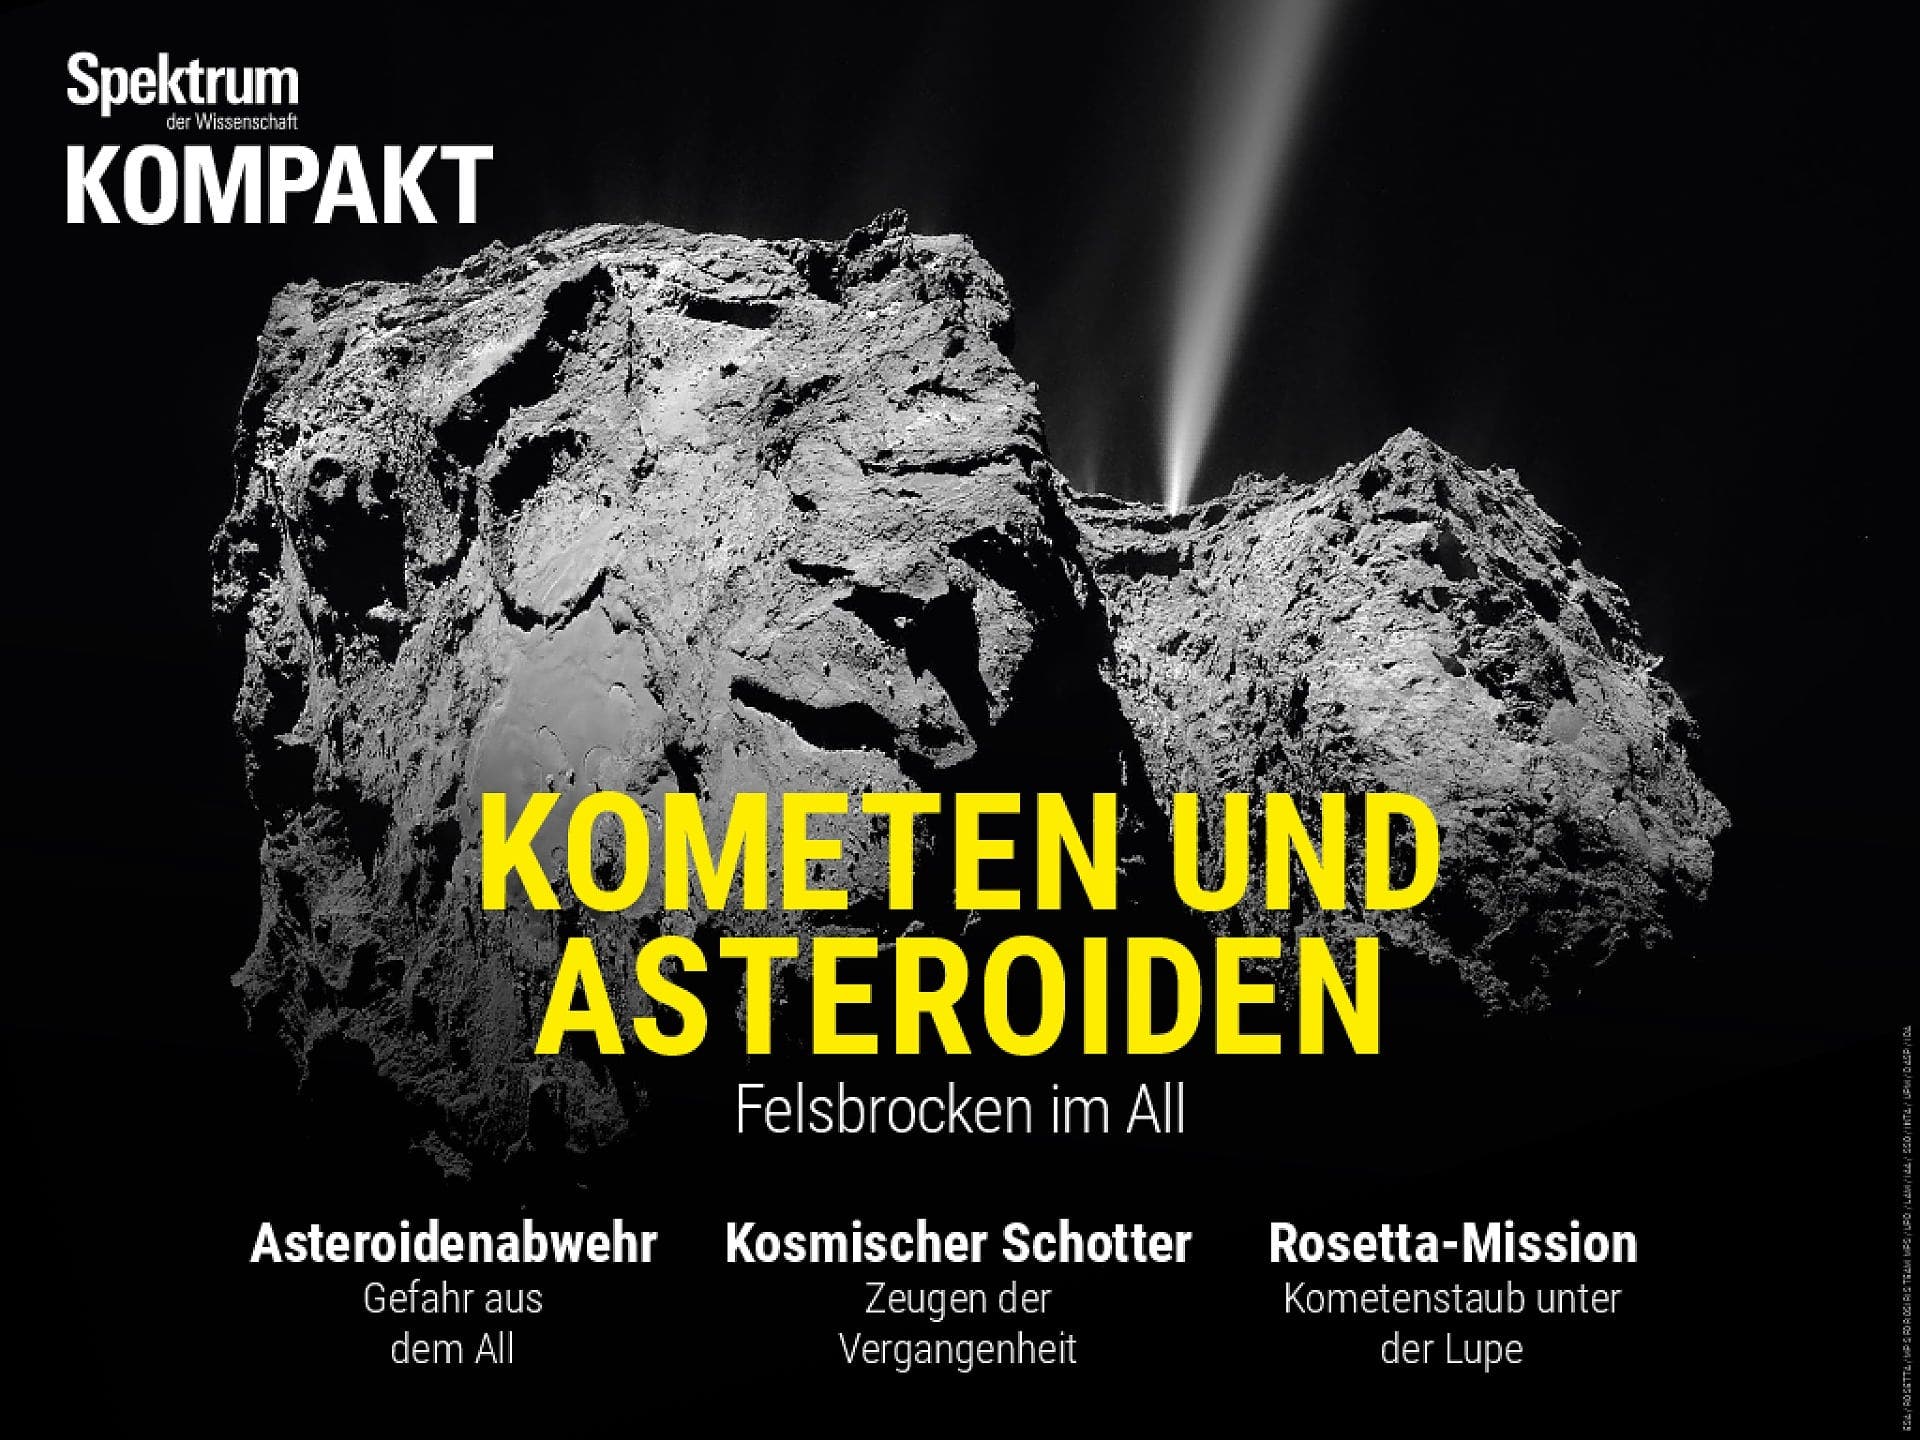 Kometen und Asteroiden - Felsbrocken im All